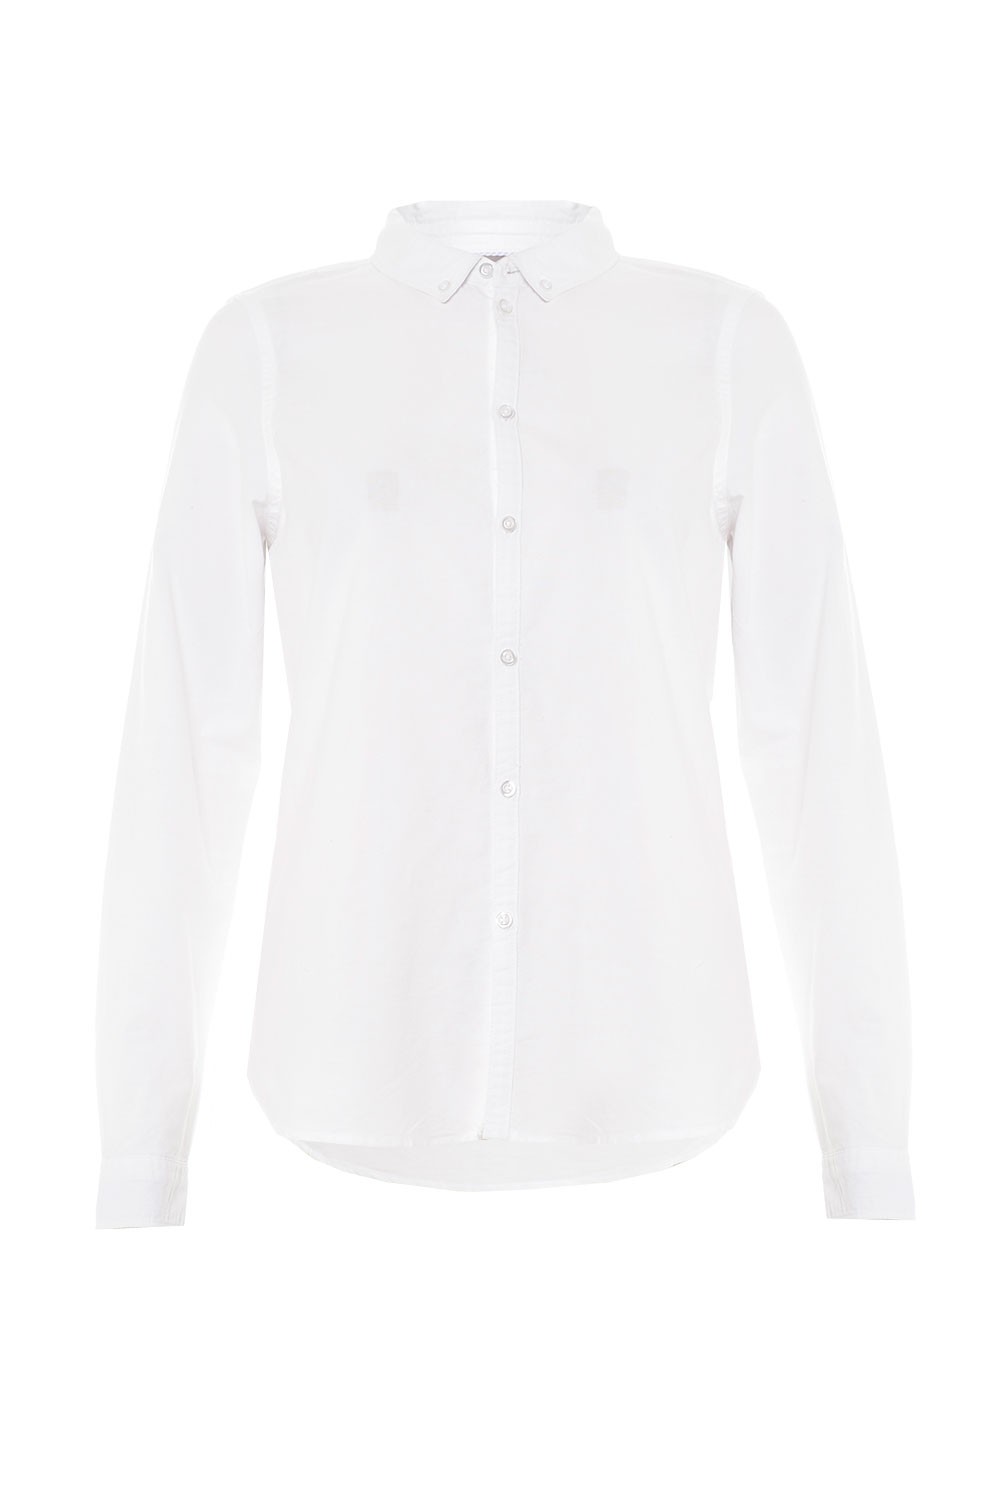 Vero Moda Katie LS Shirt in White | iCLOTHING